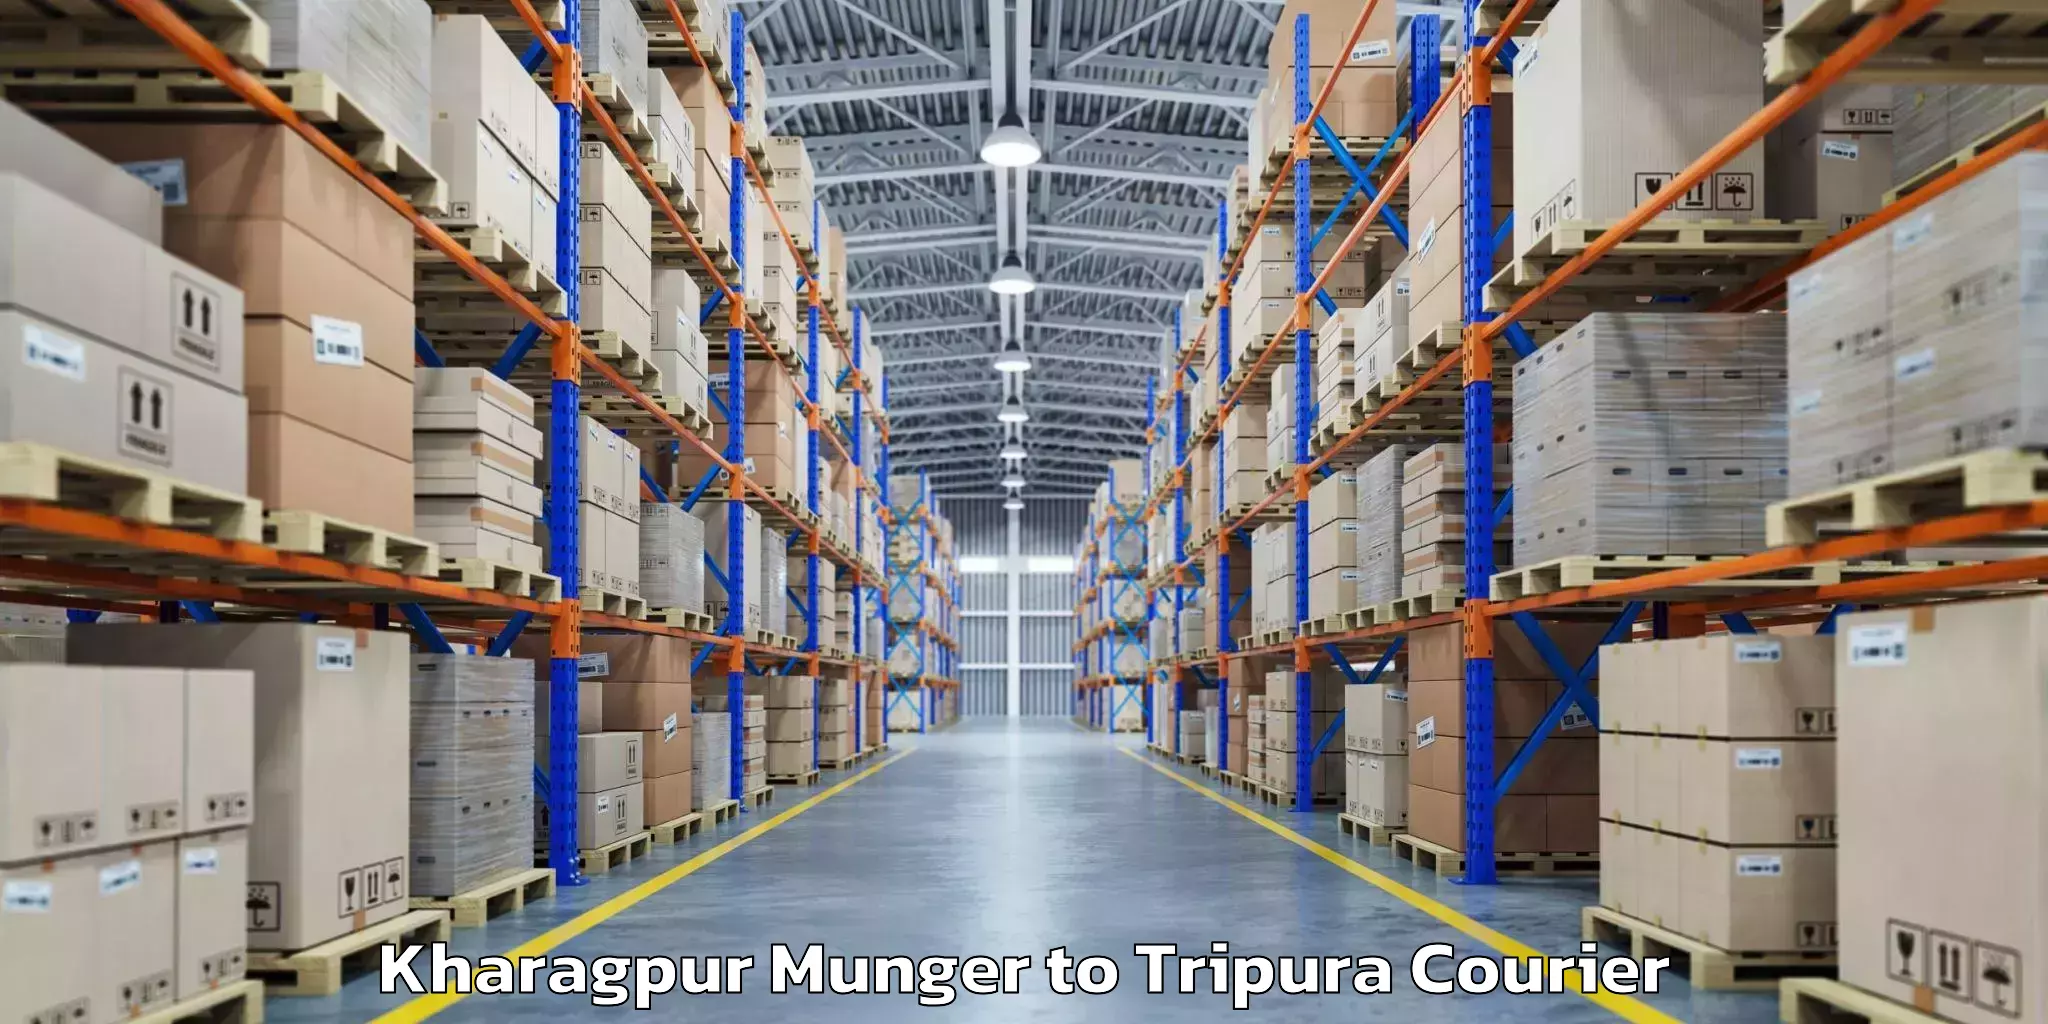 Baggage transport updates Kharagpur Munger to IIIT Agartala